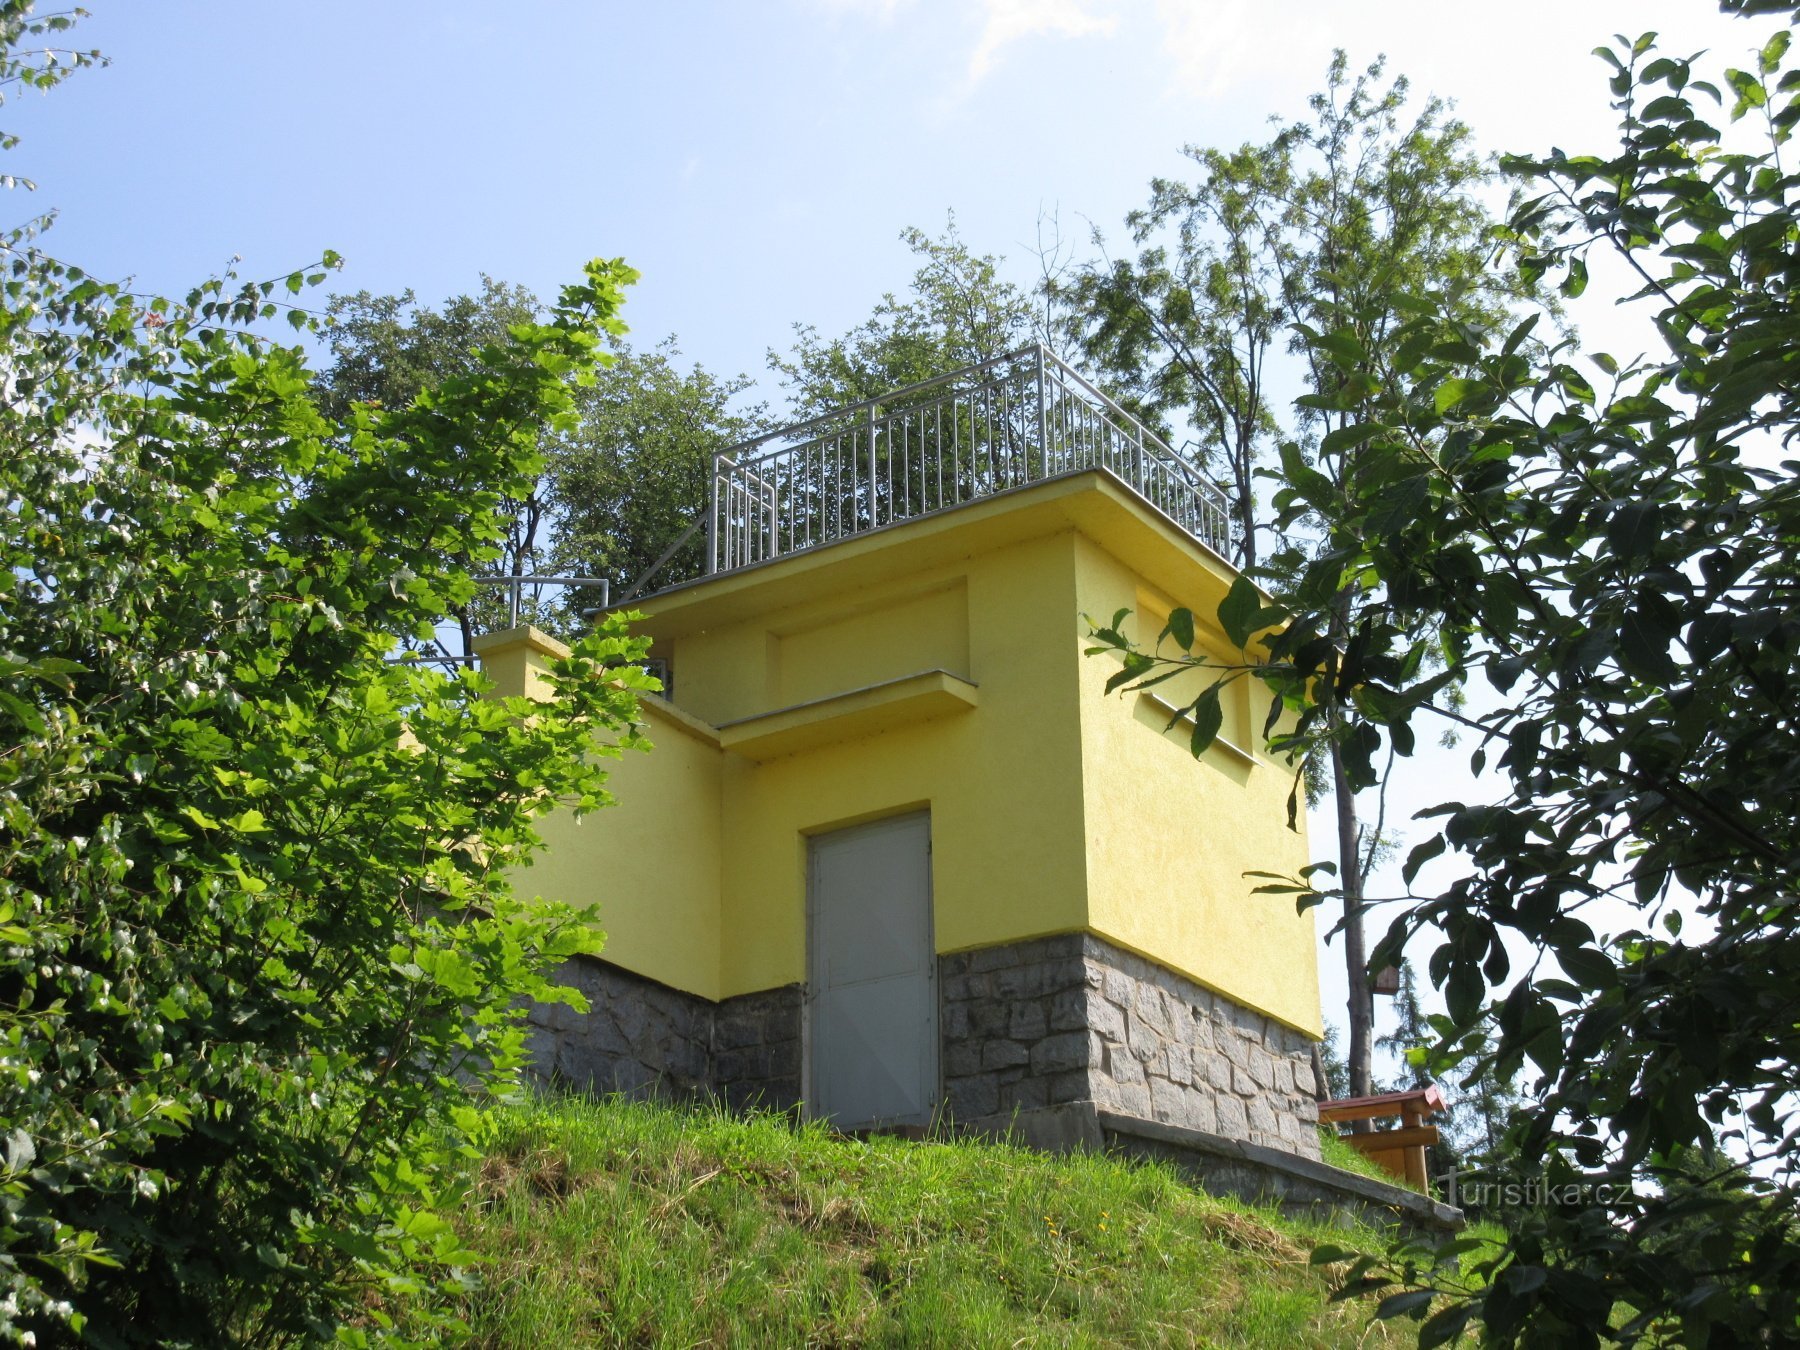 Ždírec nad Doubravau - tháp quan sát và nhà máy bia nhỏ ở Nông trại Džekov